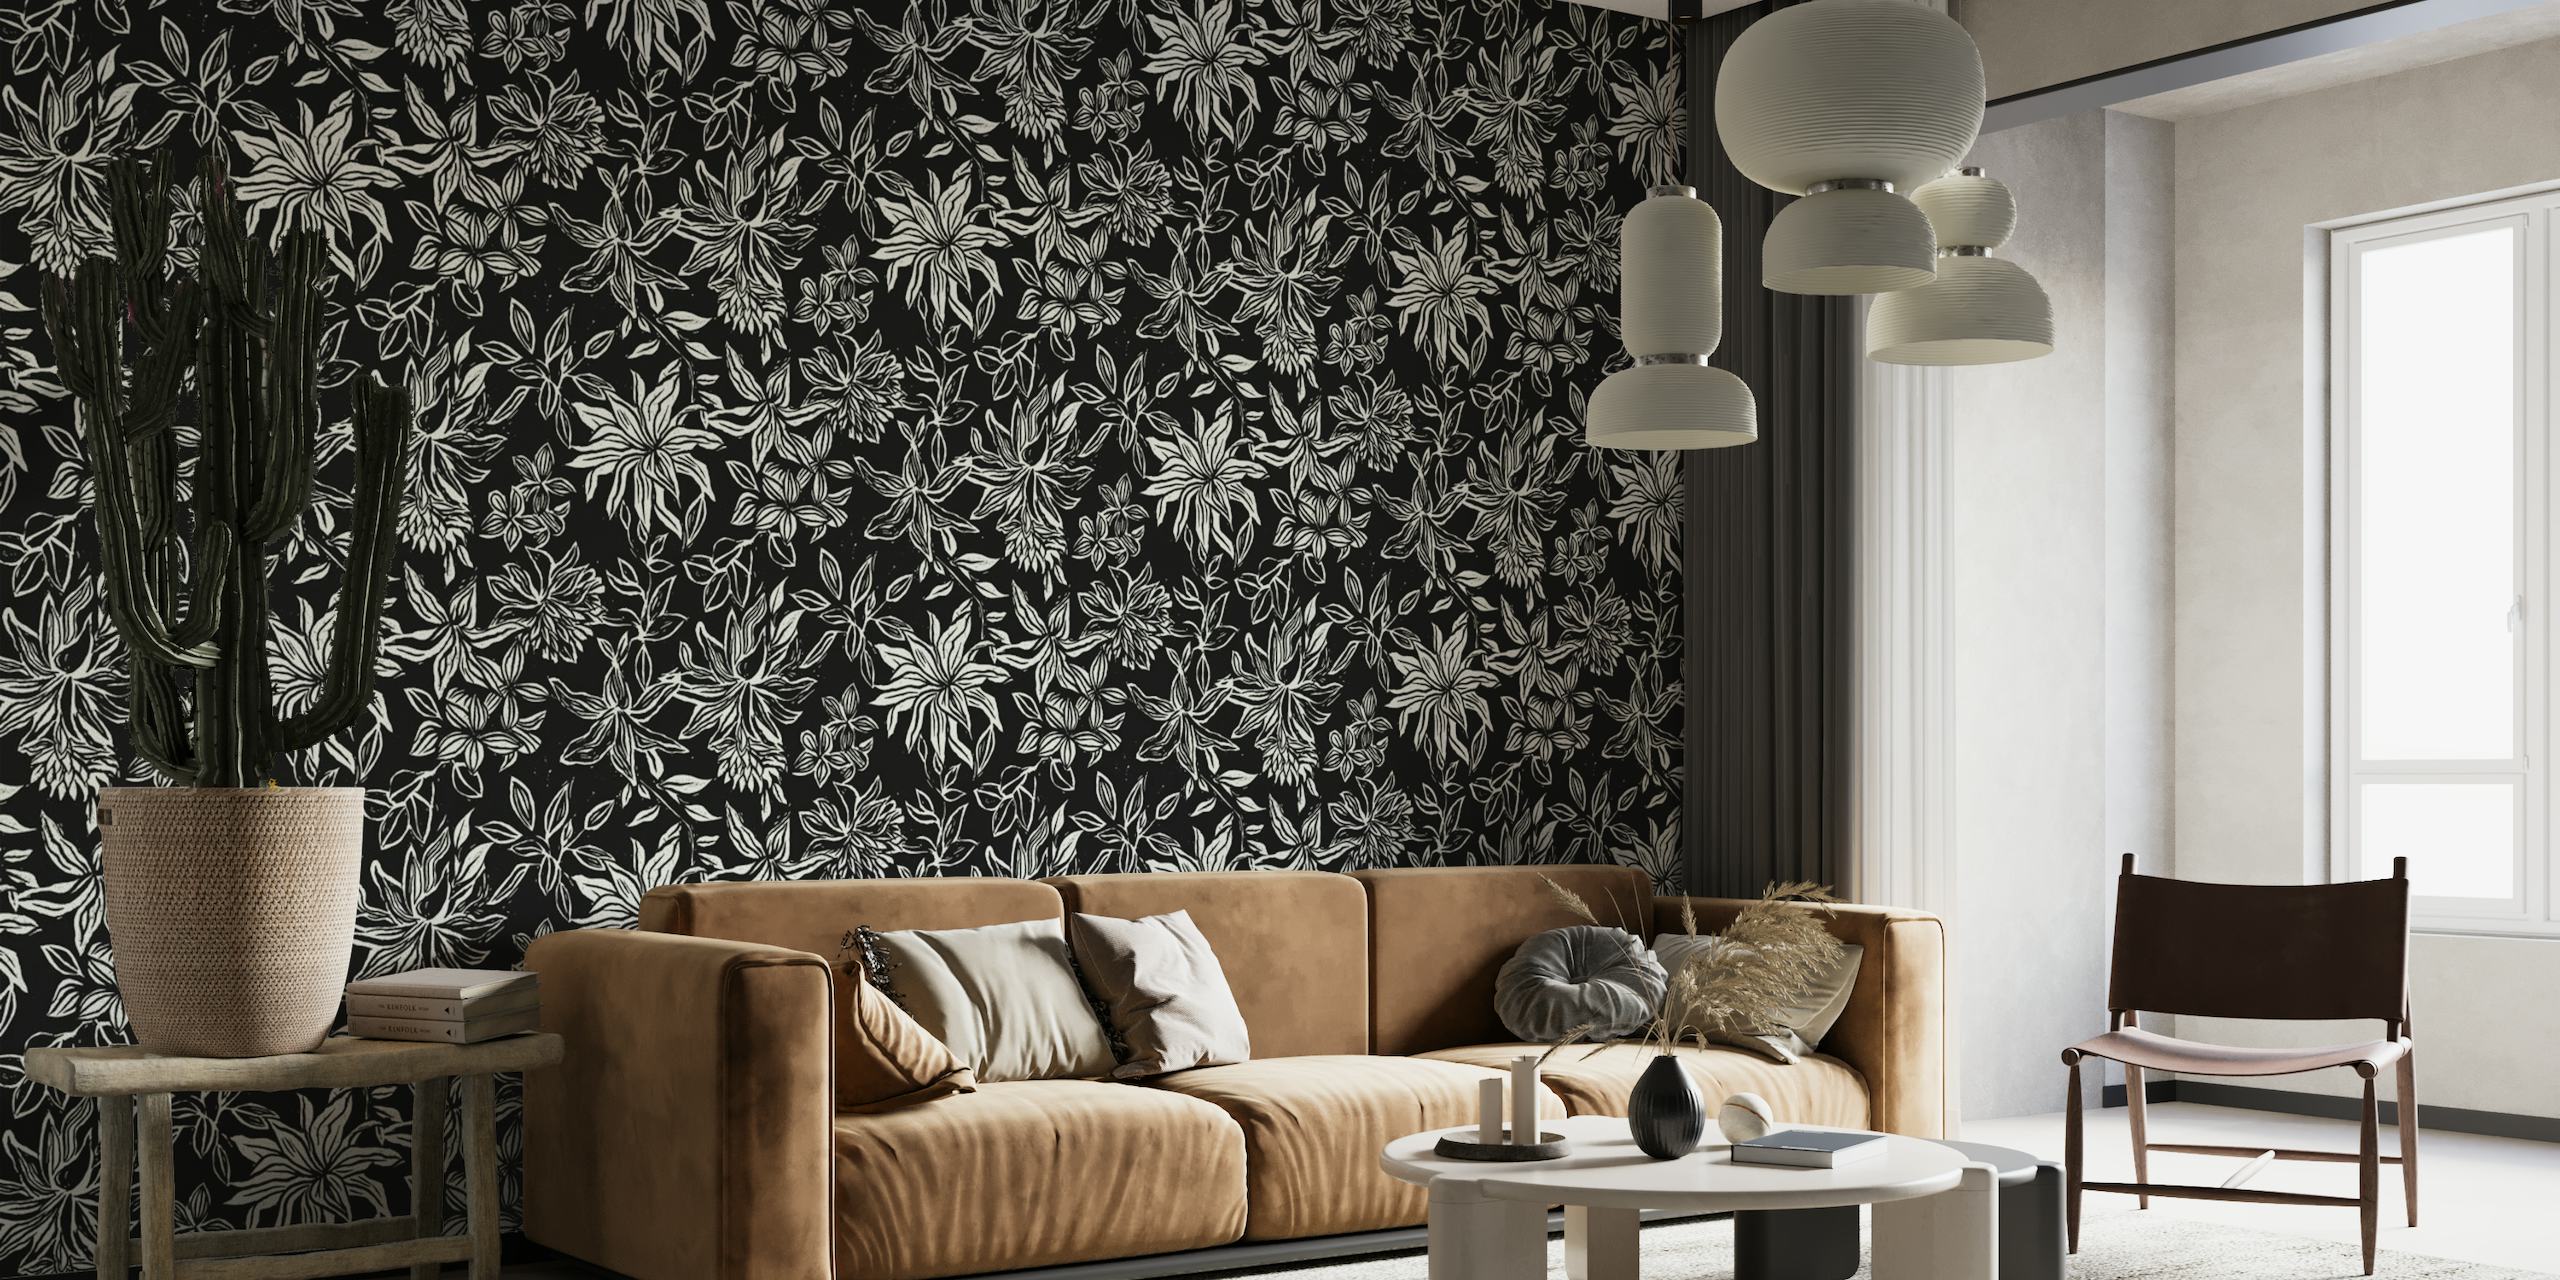 Linocut Flowers off-white on black wallpaper